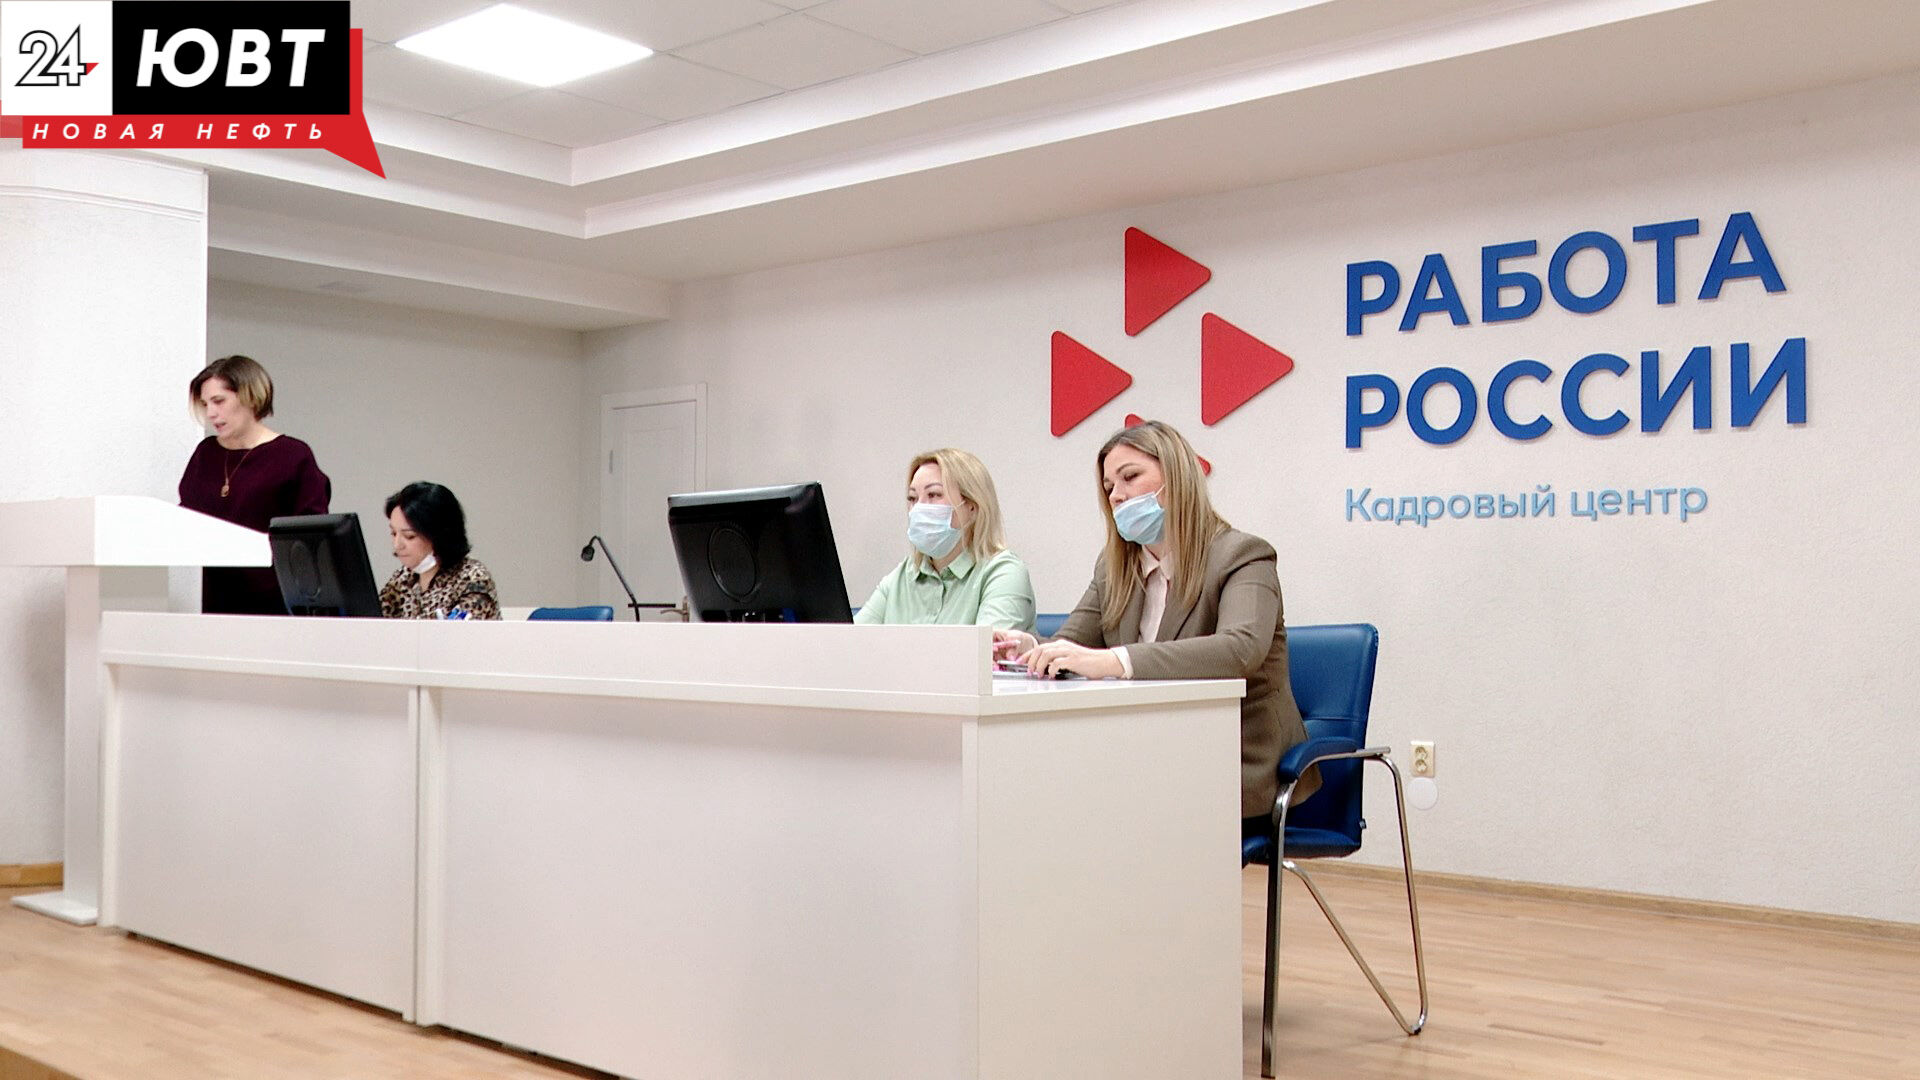 В Татарстане господдержки позволили повысить количество вакансий в промышленности